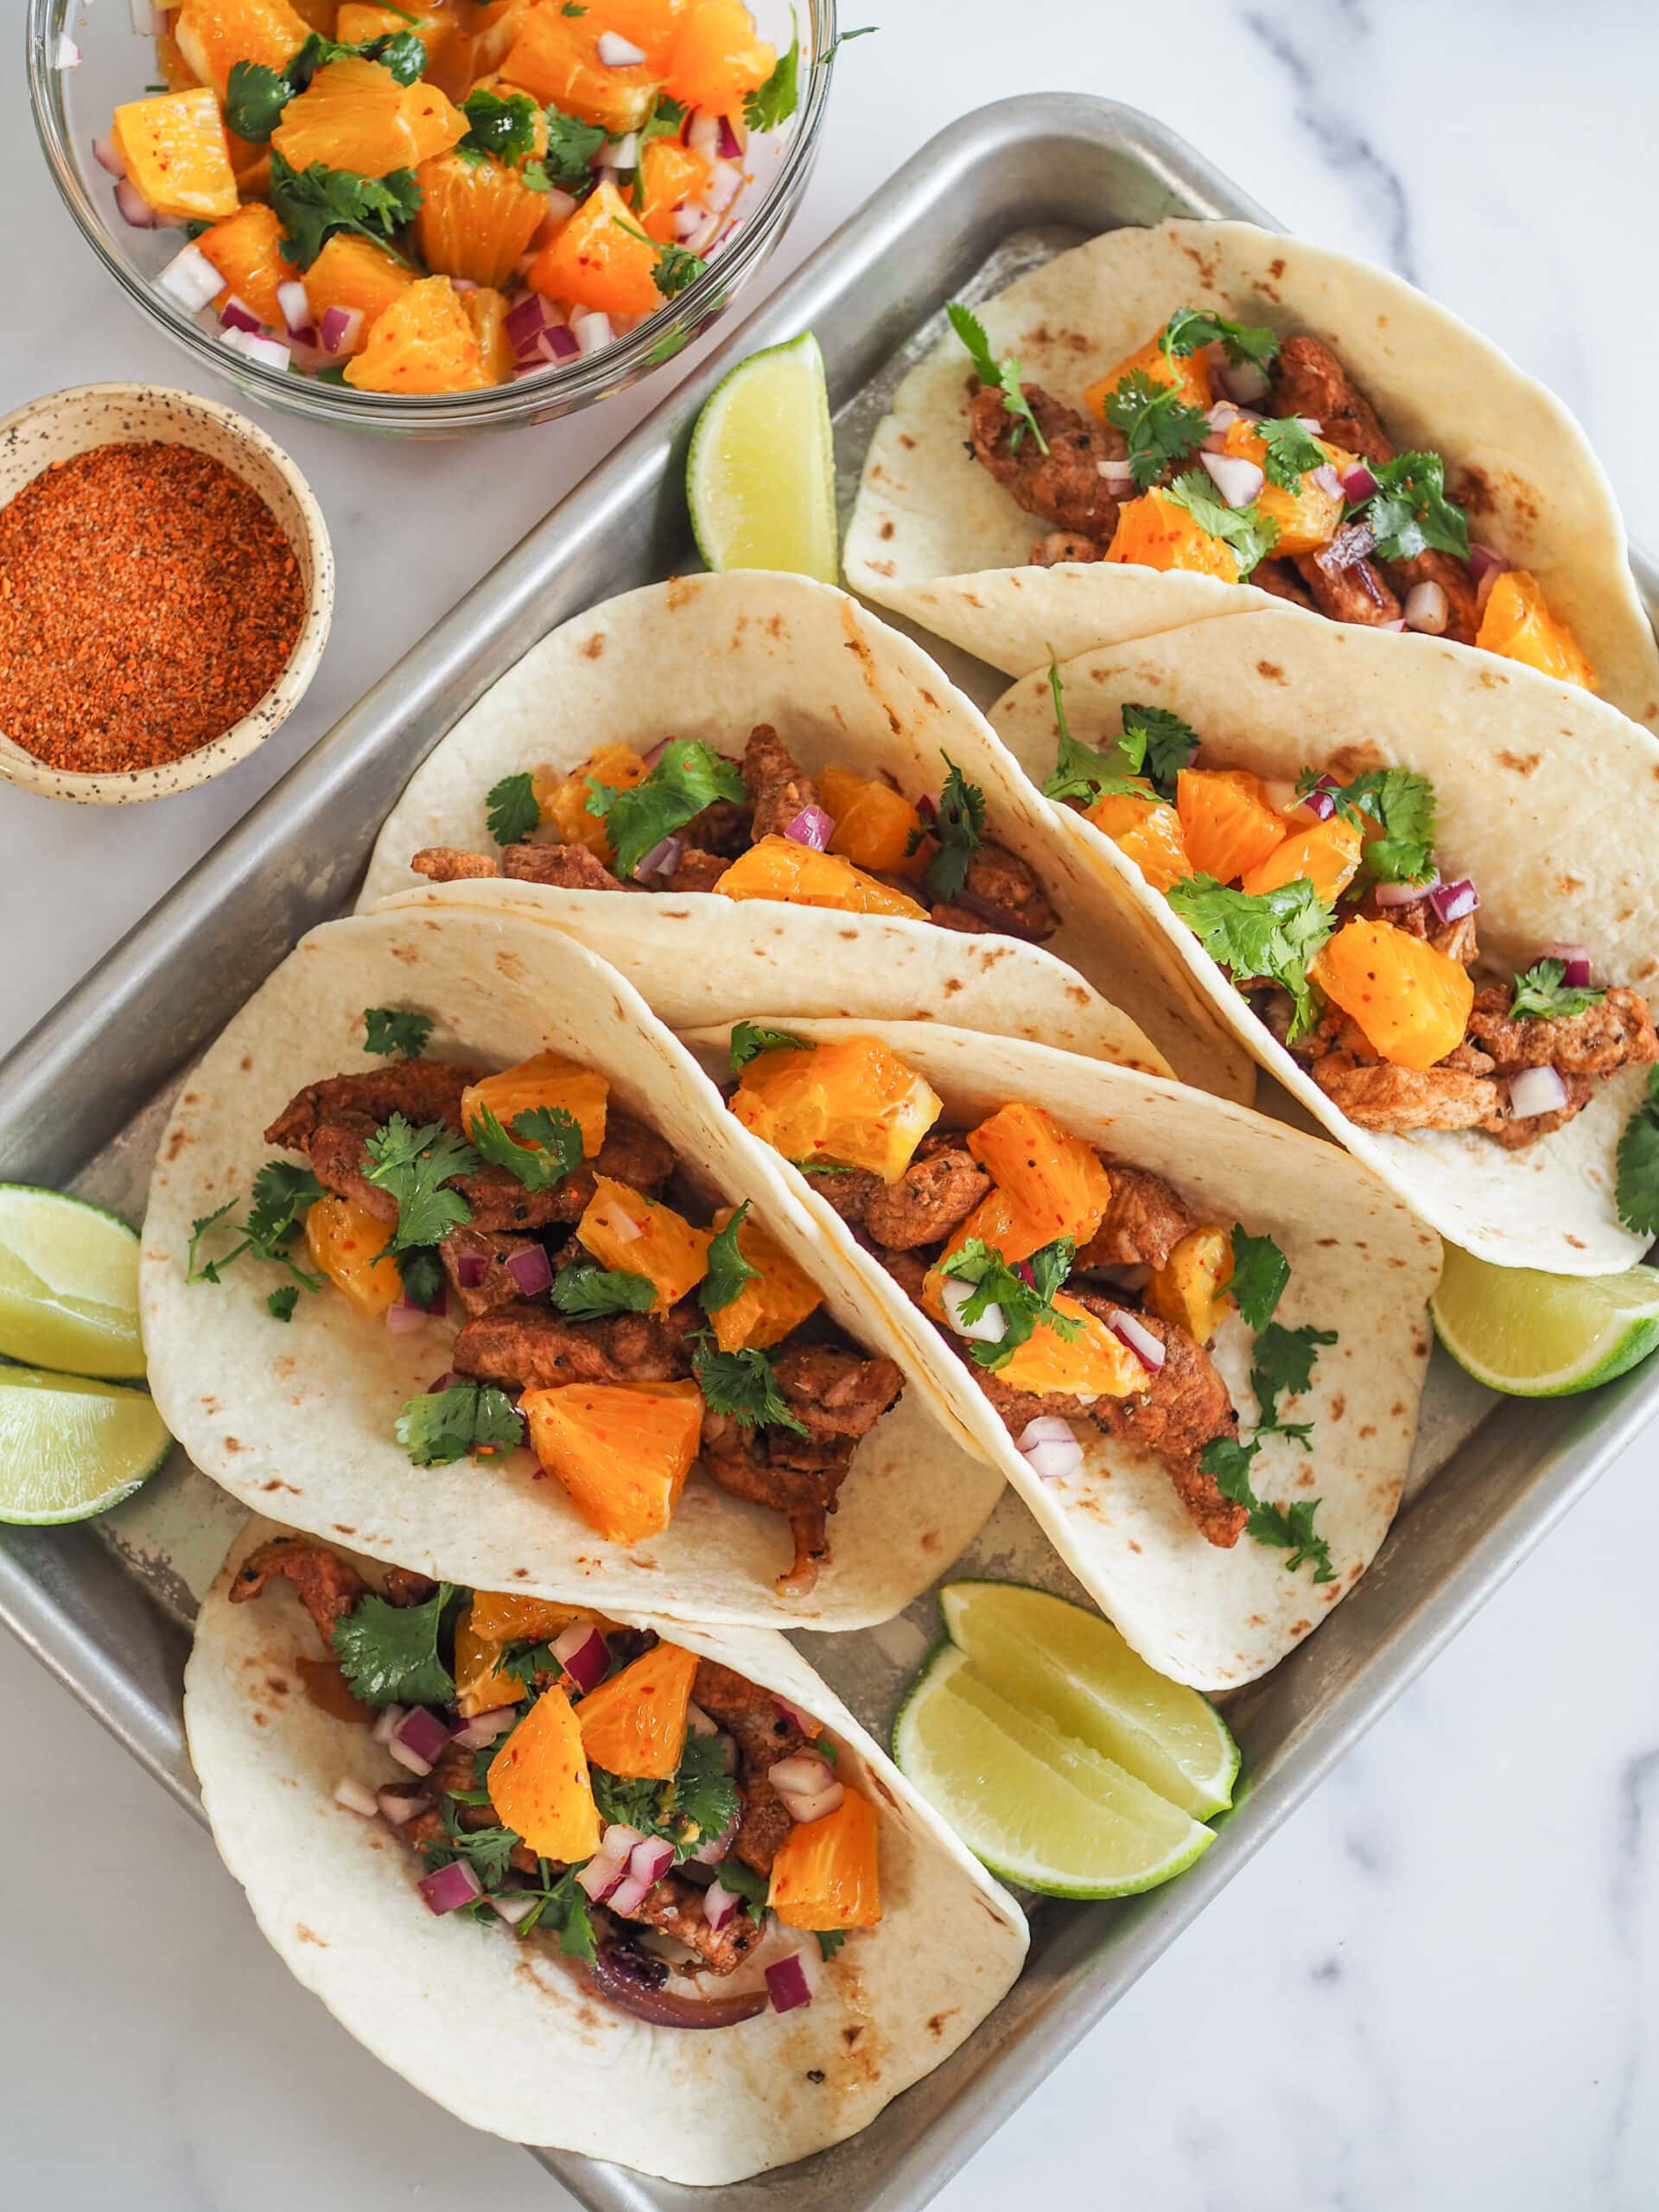 EASY Pork Tacos with Citrus Salsa – The Travel Bite